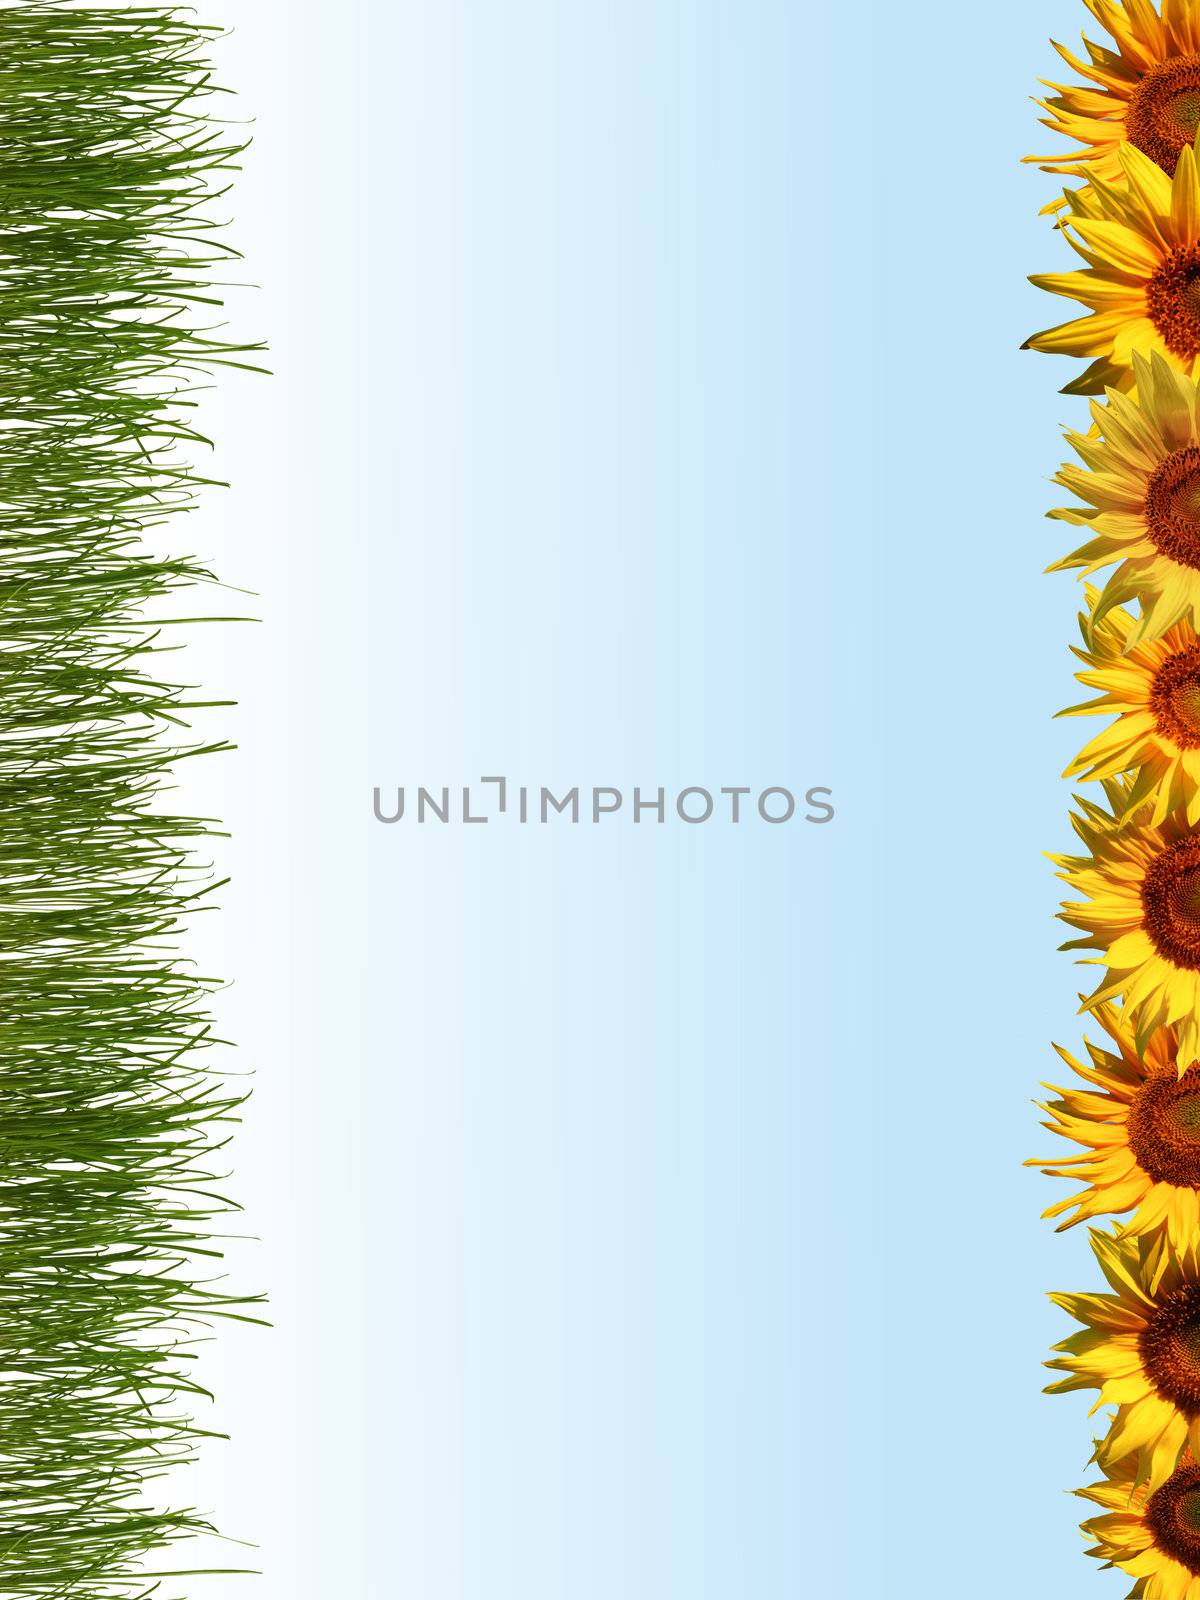 Line of sunflowers by velkol